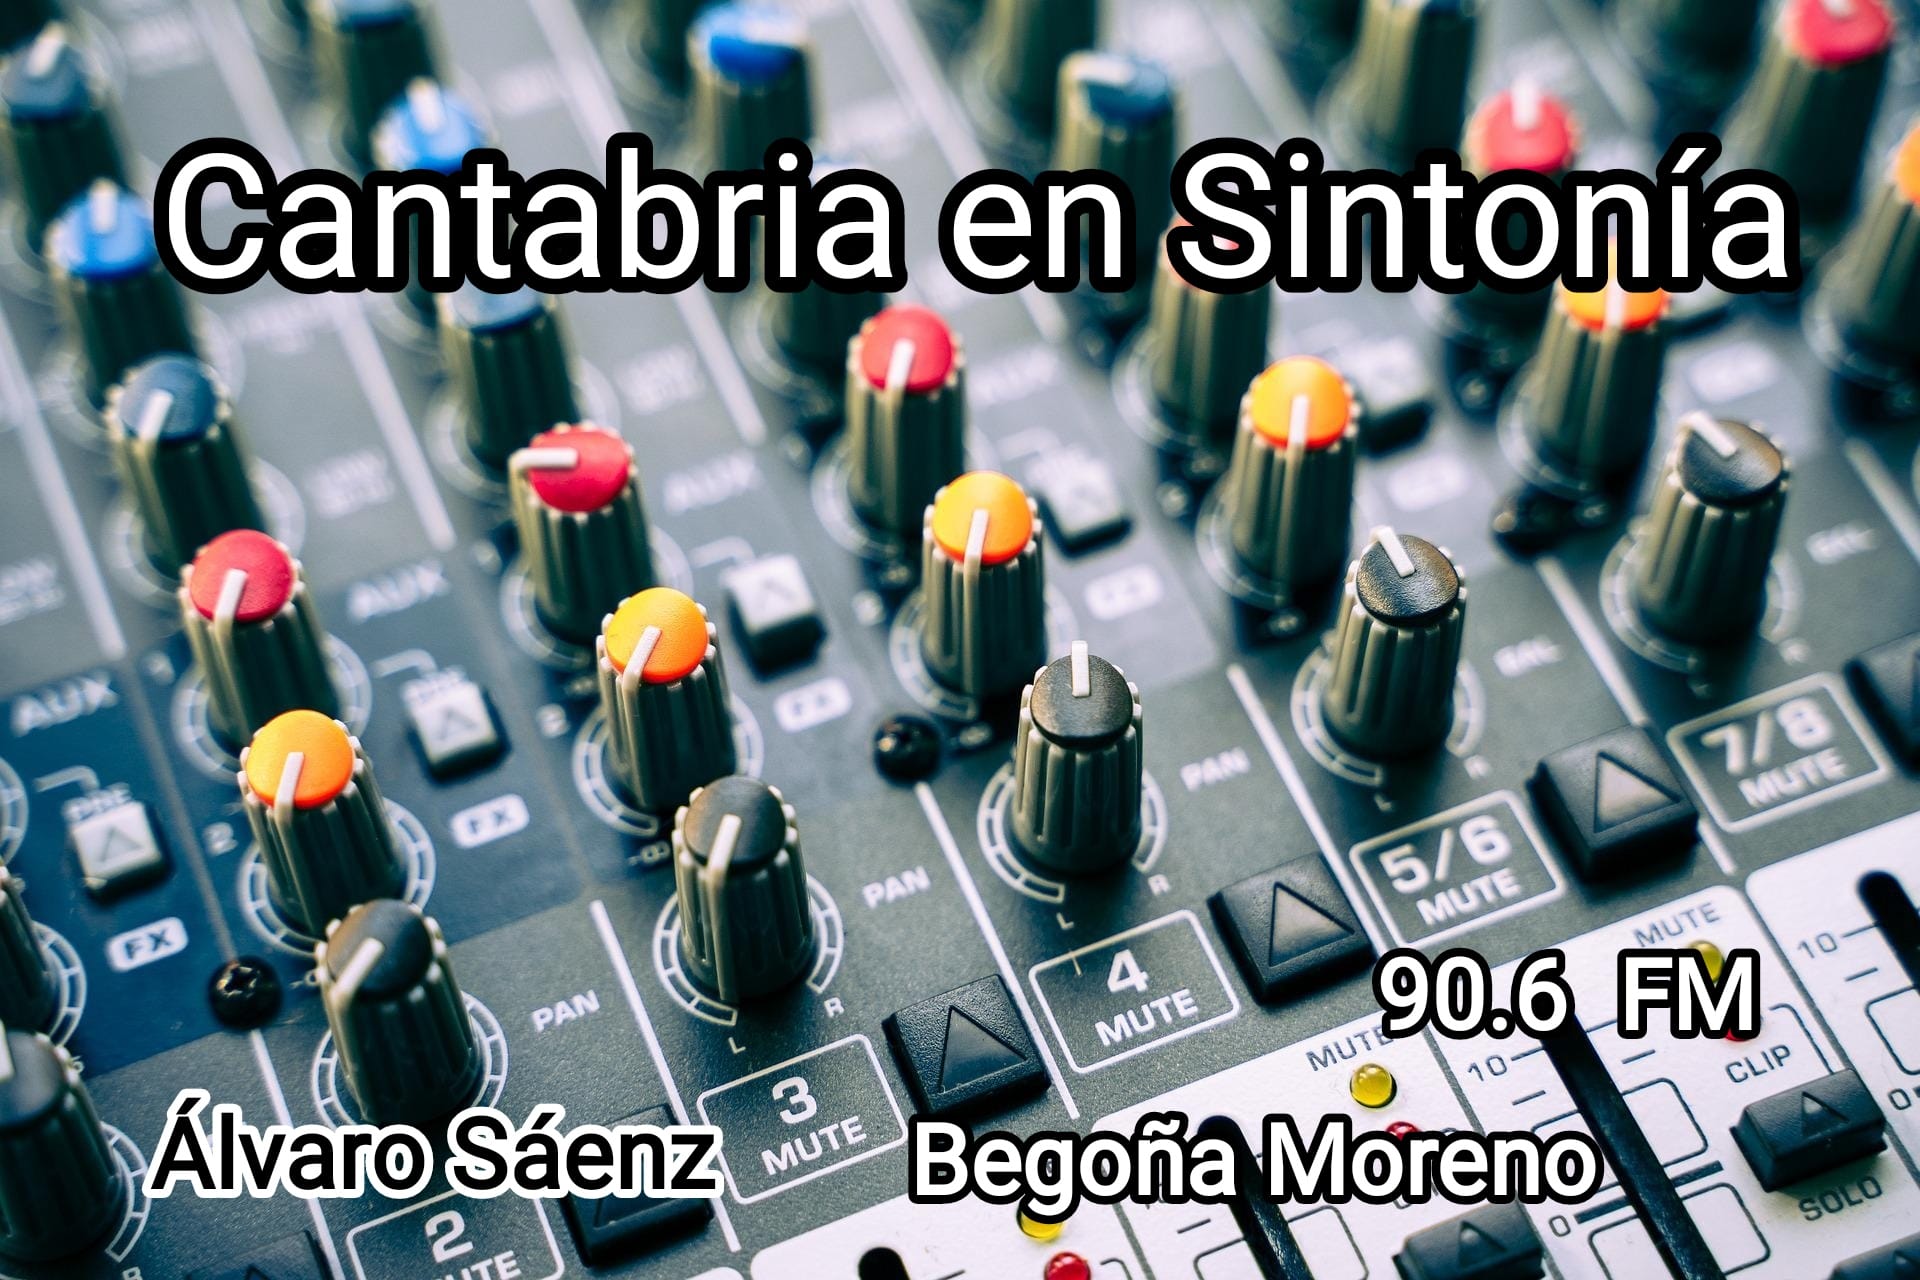 Cantabria en Sintonía en MixFm. Jueves 11-08-2022